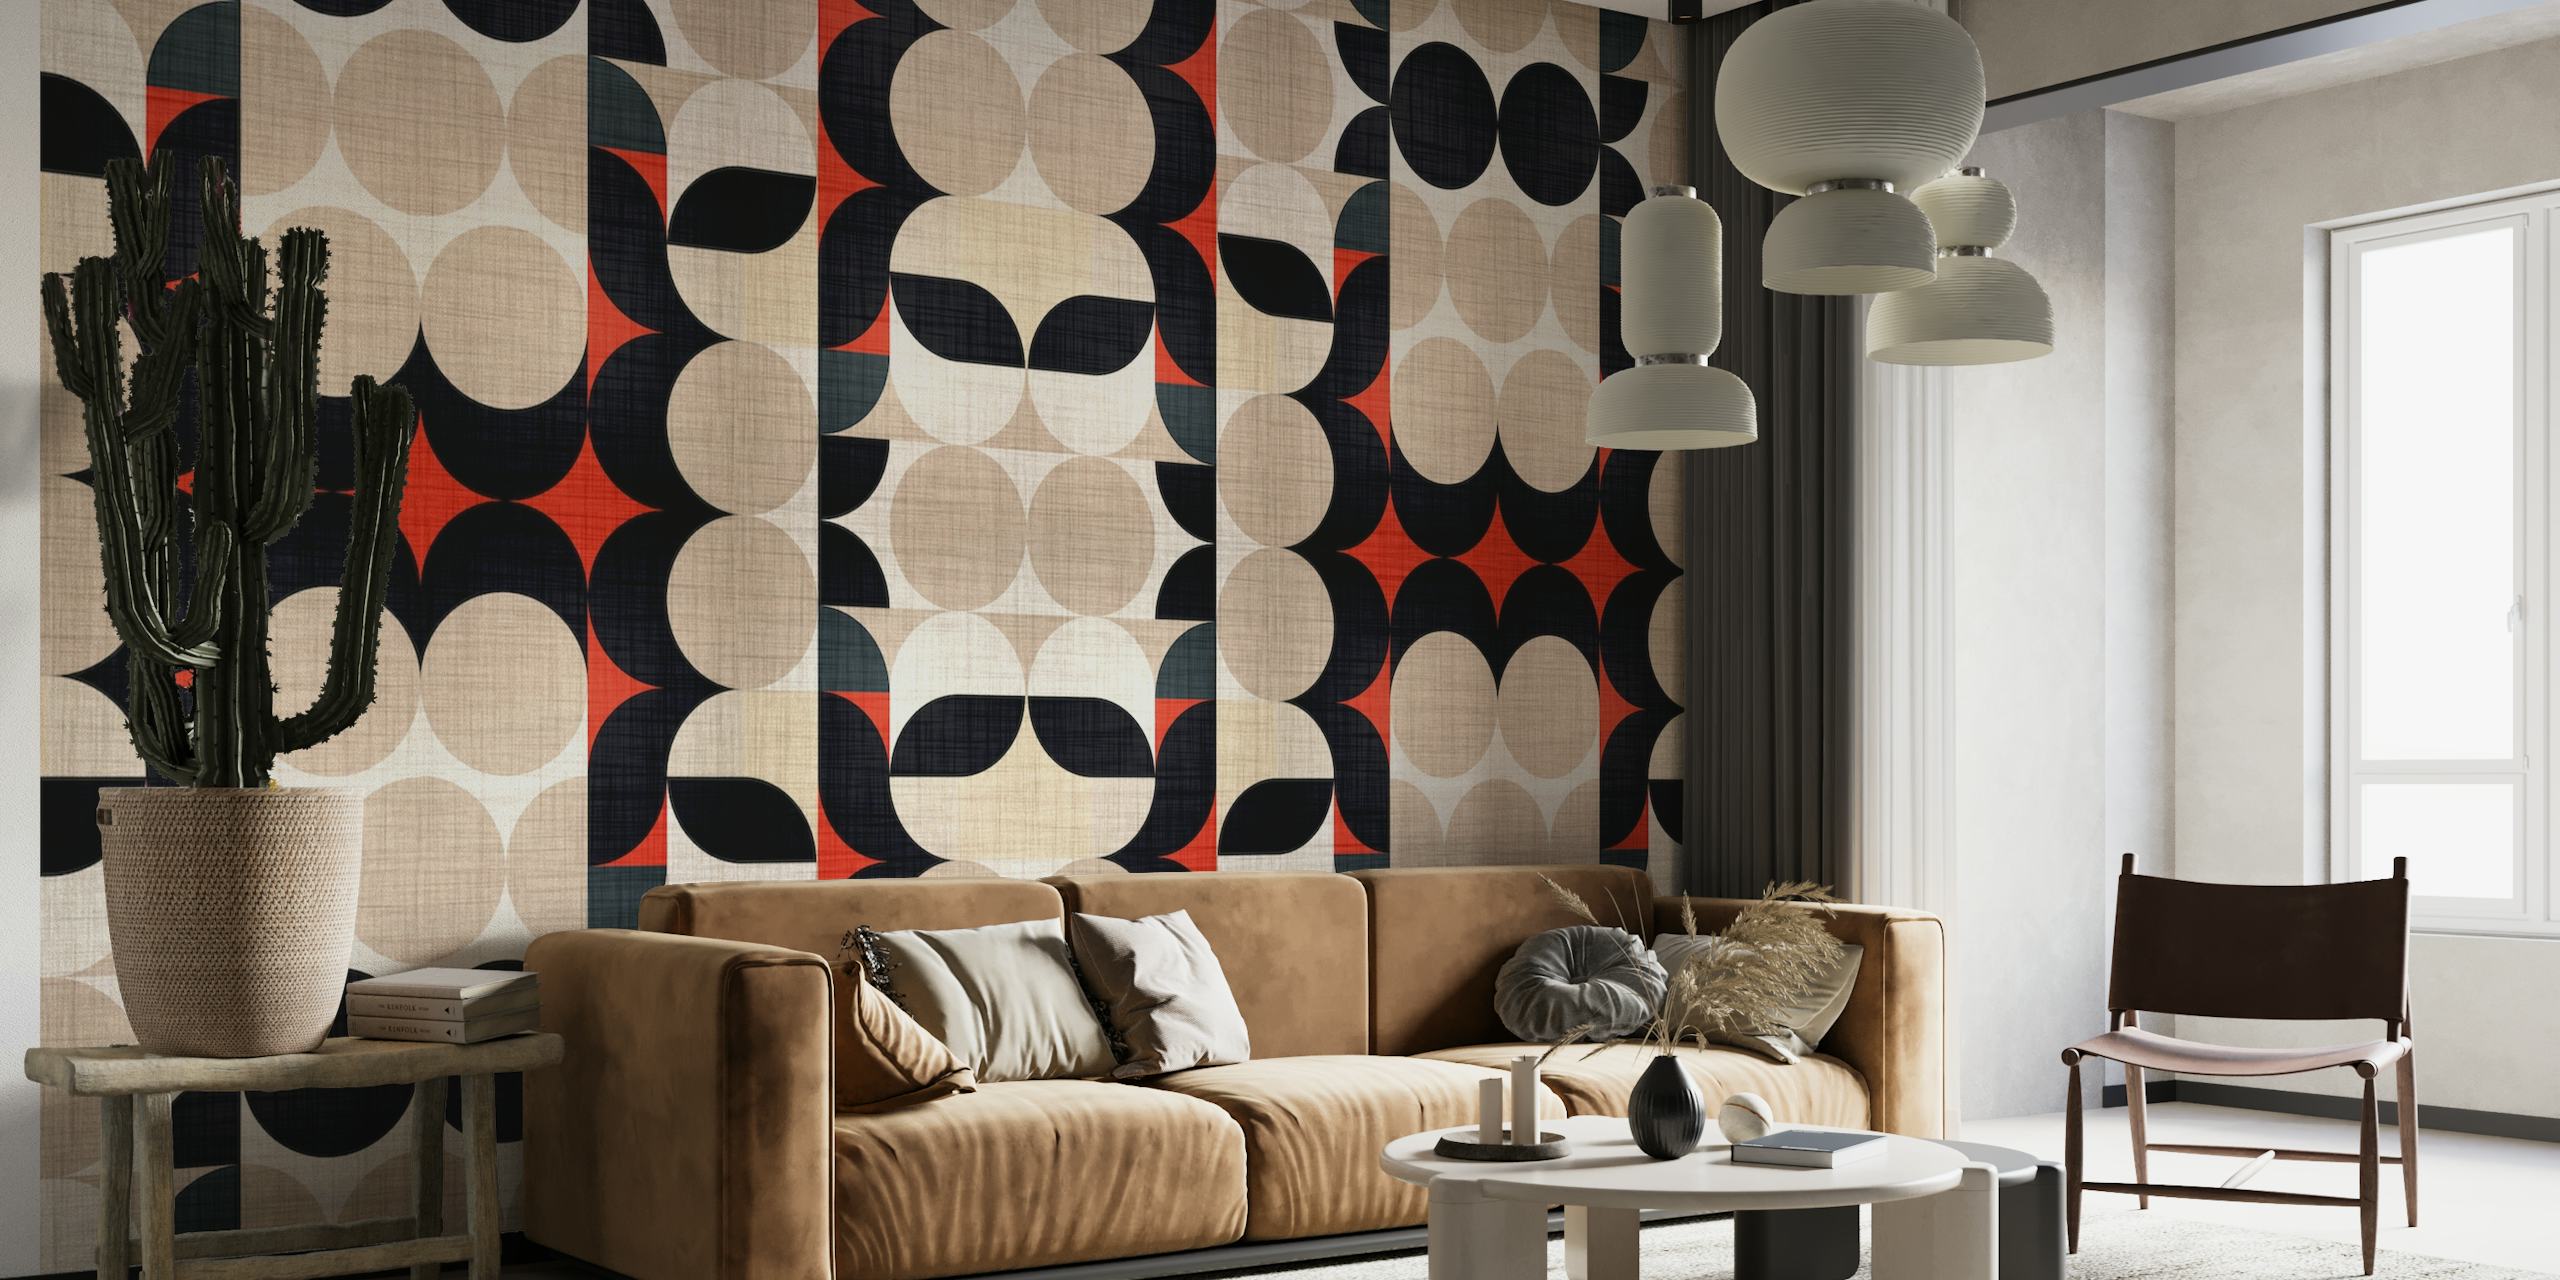 Vuosisadan puolivälin moderni kangaskuvioinen seinätapetti, jossa on geometrisia muotoja beigen, mustan ja punaisena